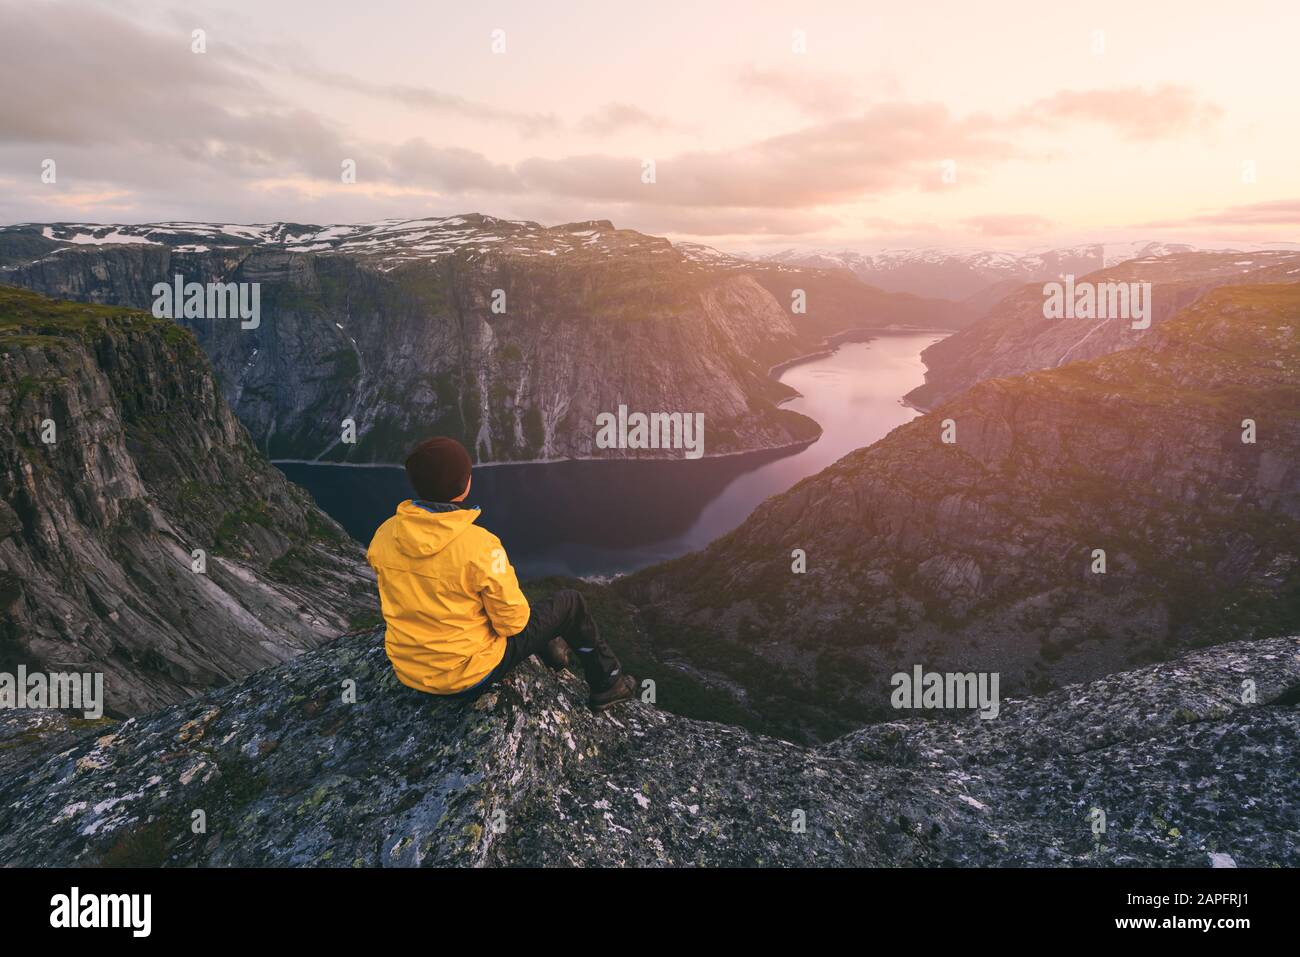 Turista en solitario en la roca Trolltunga - el acantilado escénico más espectacular y famoso de Noruega. Fotografía de paisajes Foto de stock